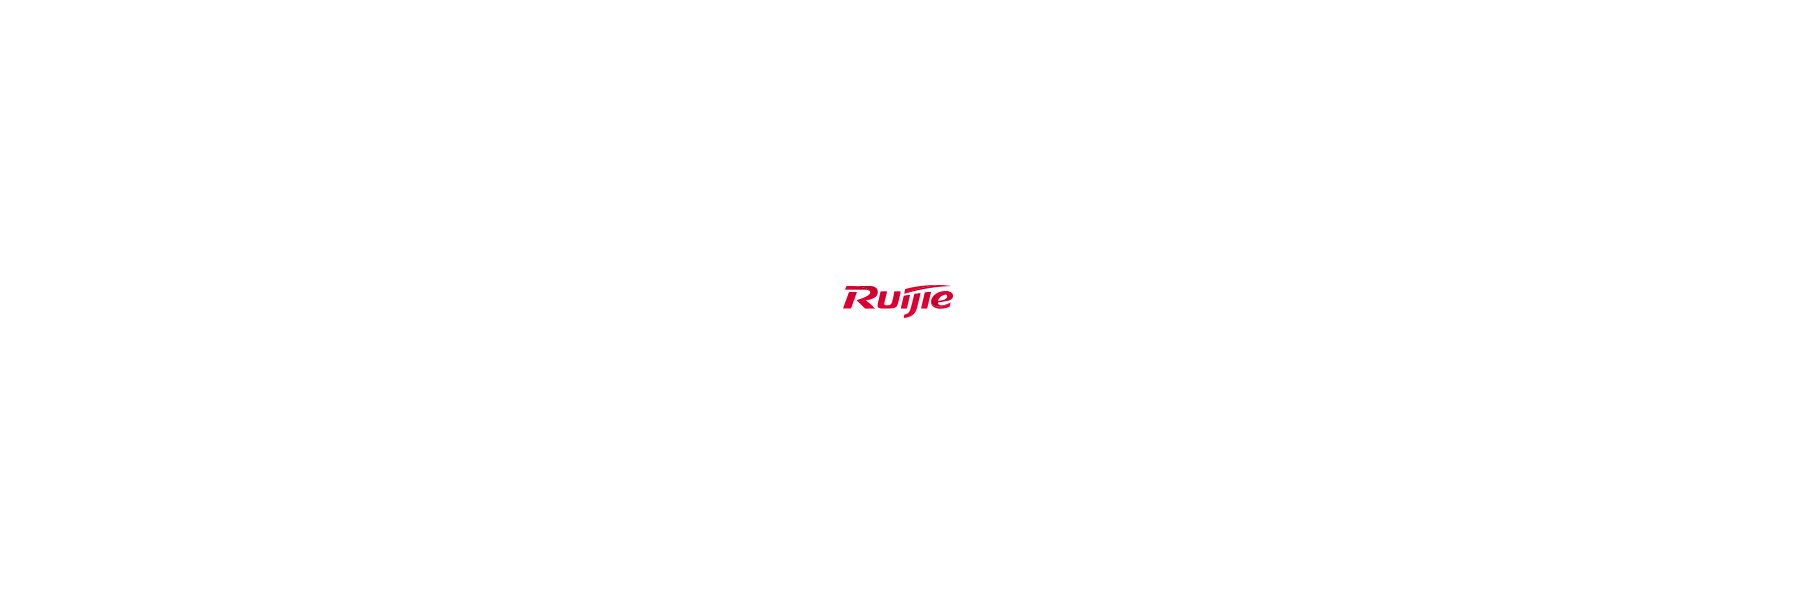 Reyee ist die SMB-Submarke, die 2014 von Ruijie...